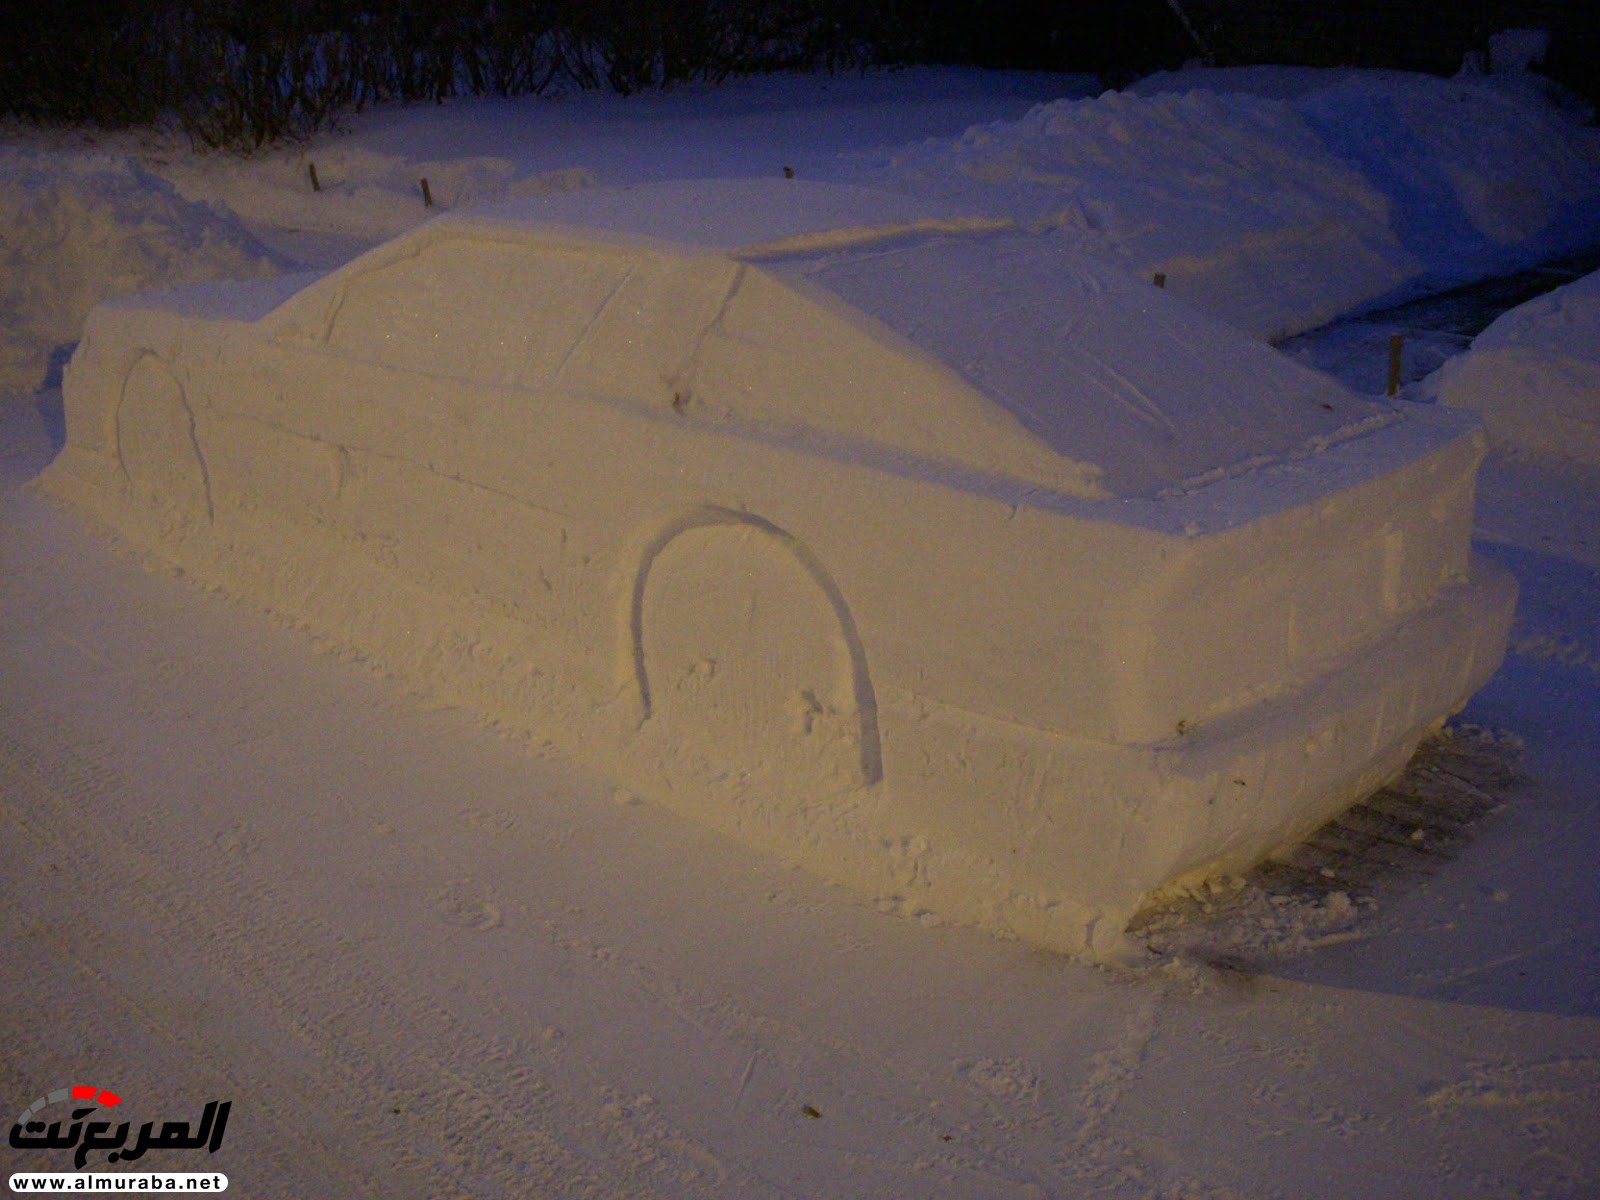 "بالصور" شرطي كندي يخالف سيارة مزيفة "مصنوعة من الثلج" 55